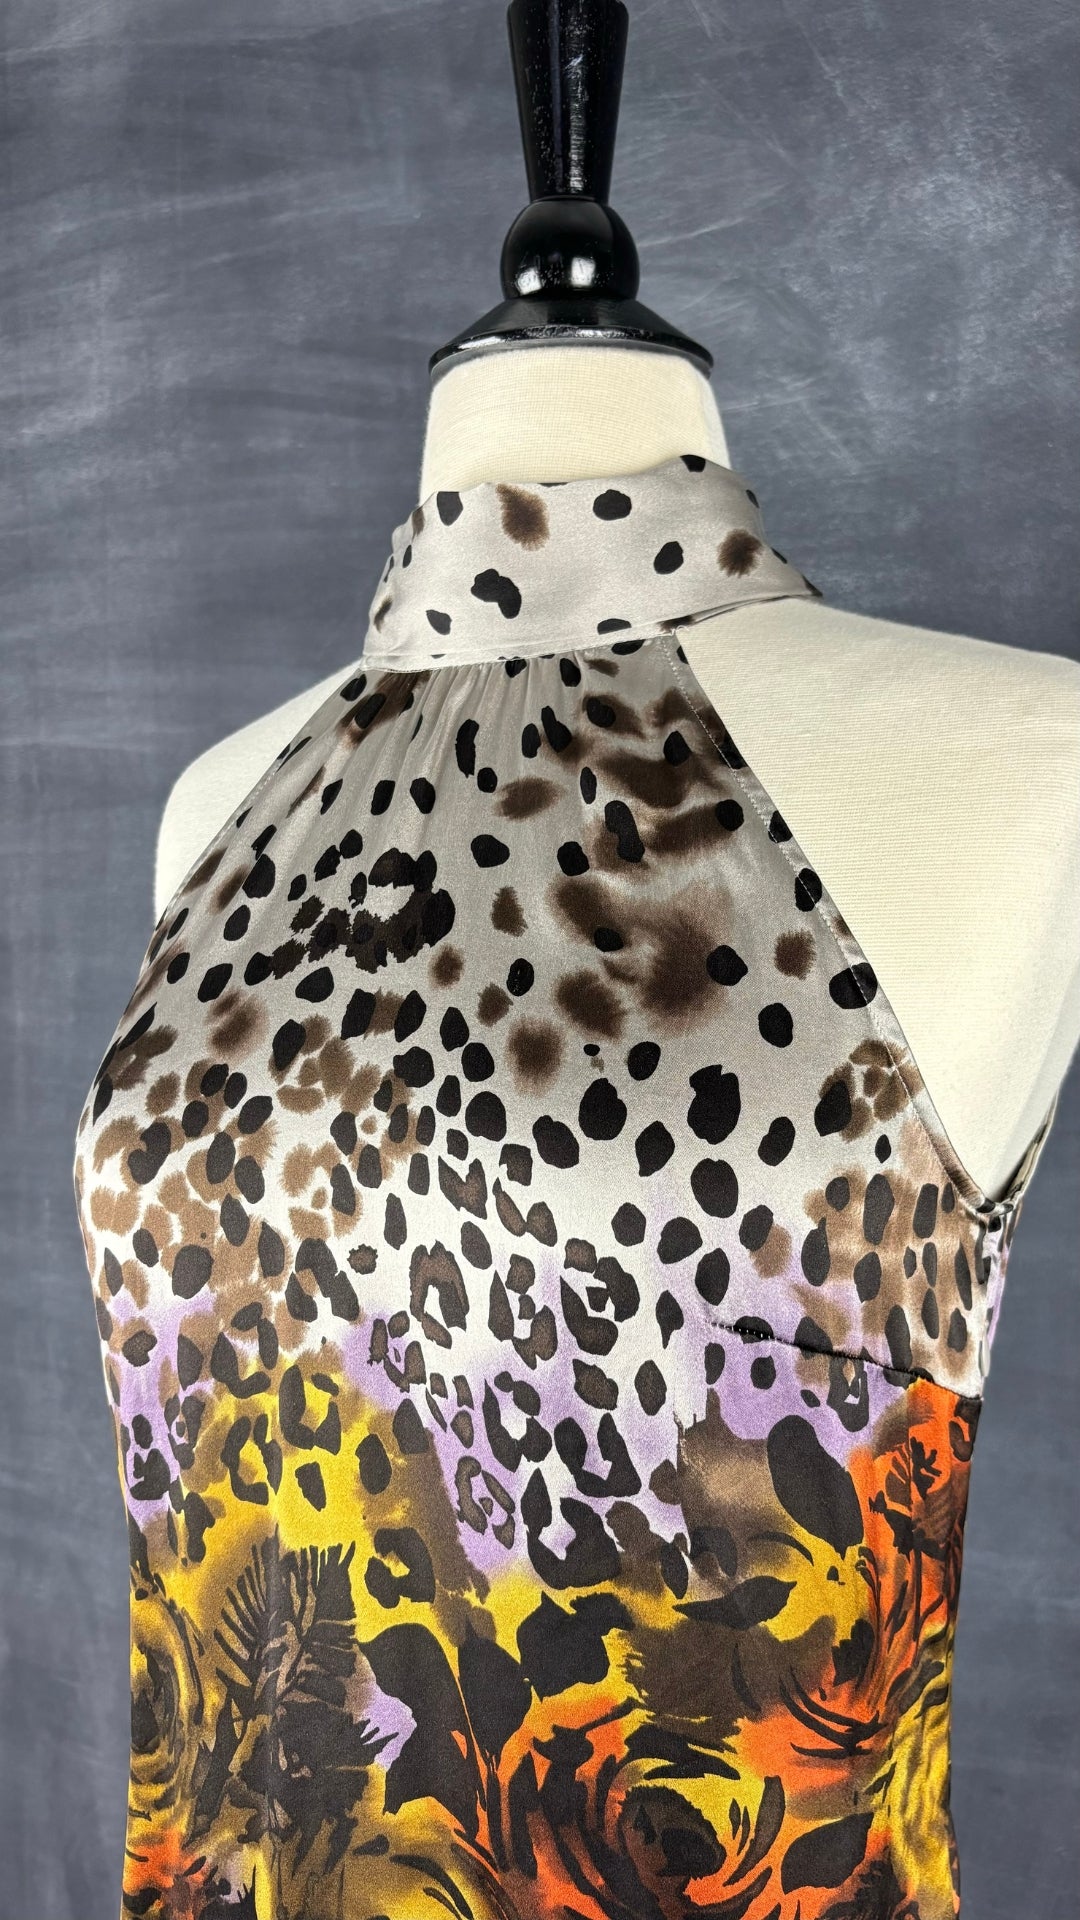 Camisole en soie florale et léopard Guess by Marciano, taille xs. Vue de l'encolure.